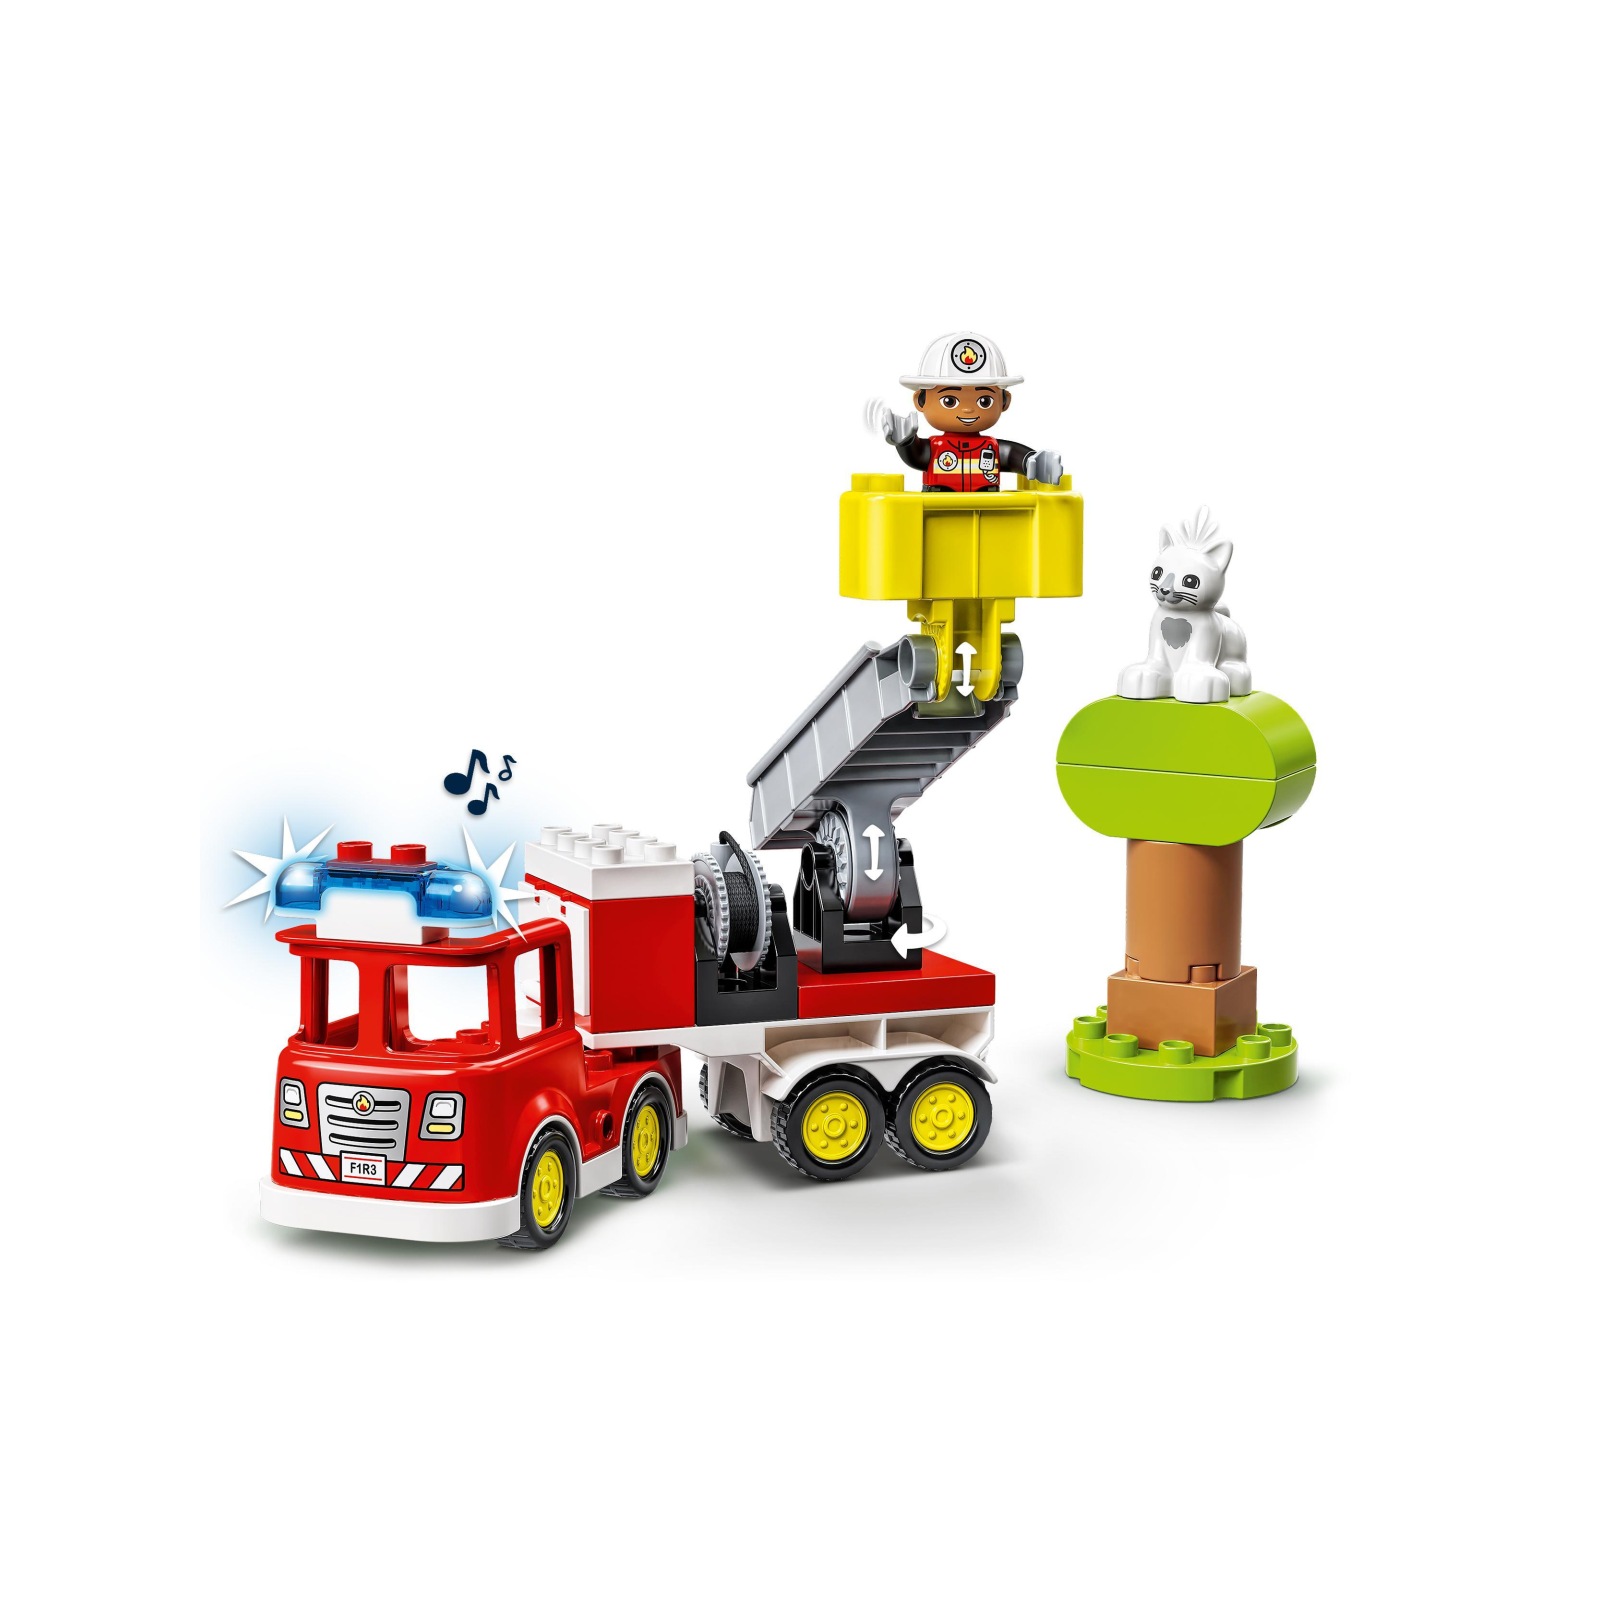 Lego duplo town autopompa, camion giocattolo con luci e sirena, figure pompiere e gatto, giochi educativi per bambini, 10969 - LEGO DUPLO